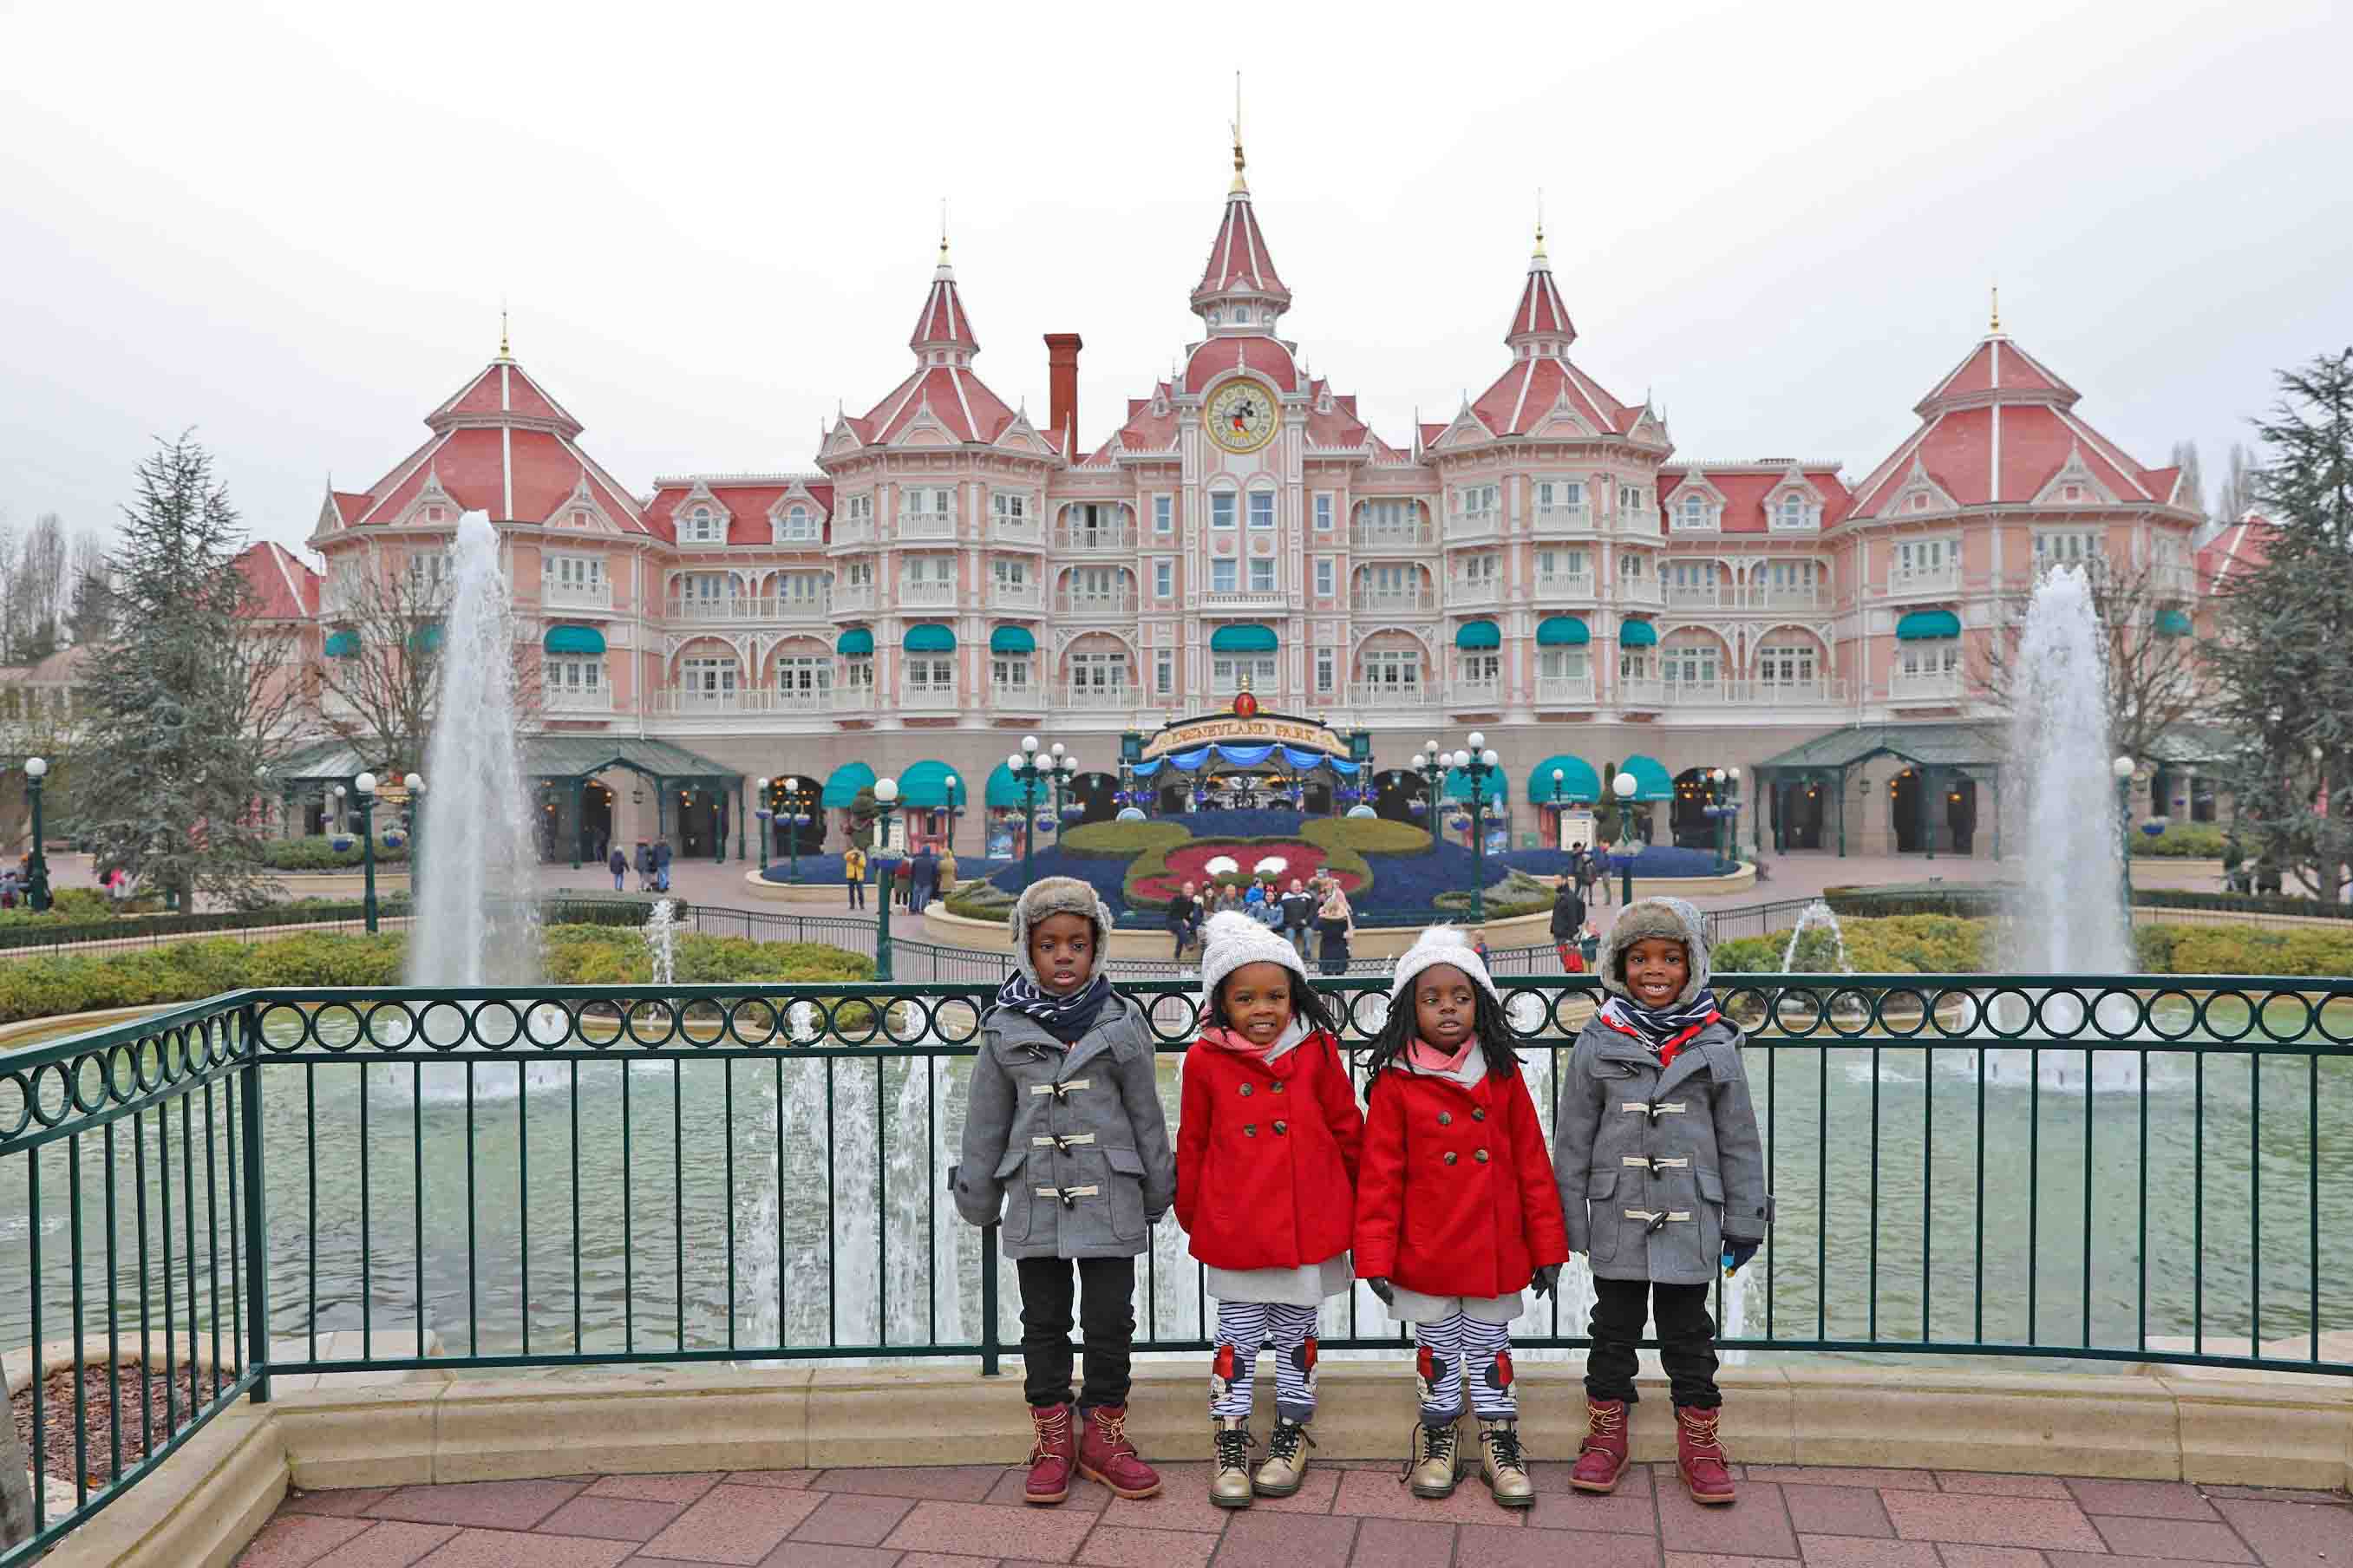 Disneyland Vs. Disneyland Paris: Which Kingdom Does it Best?